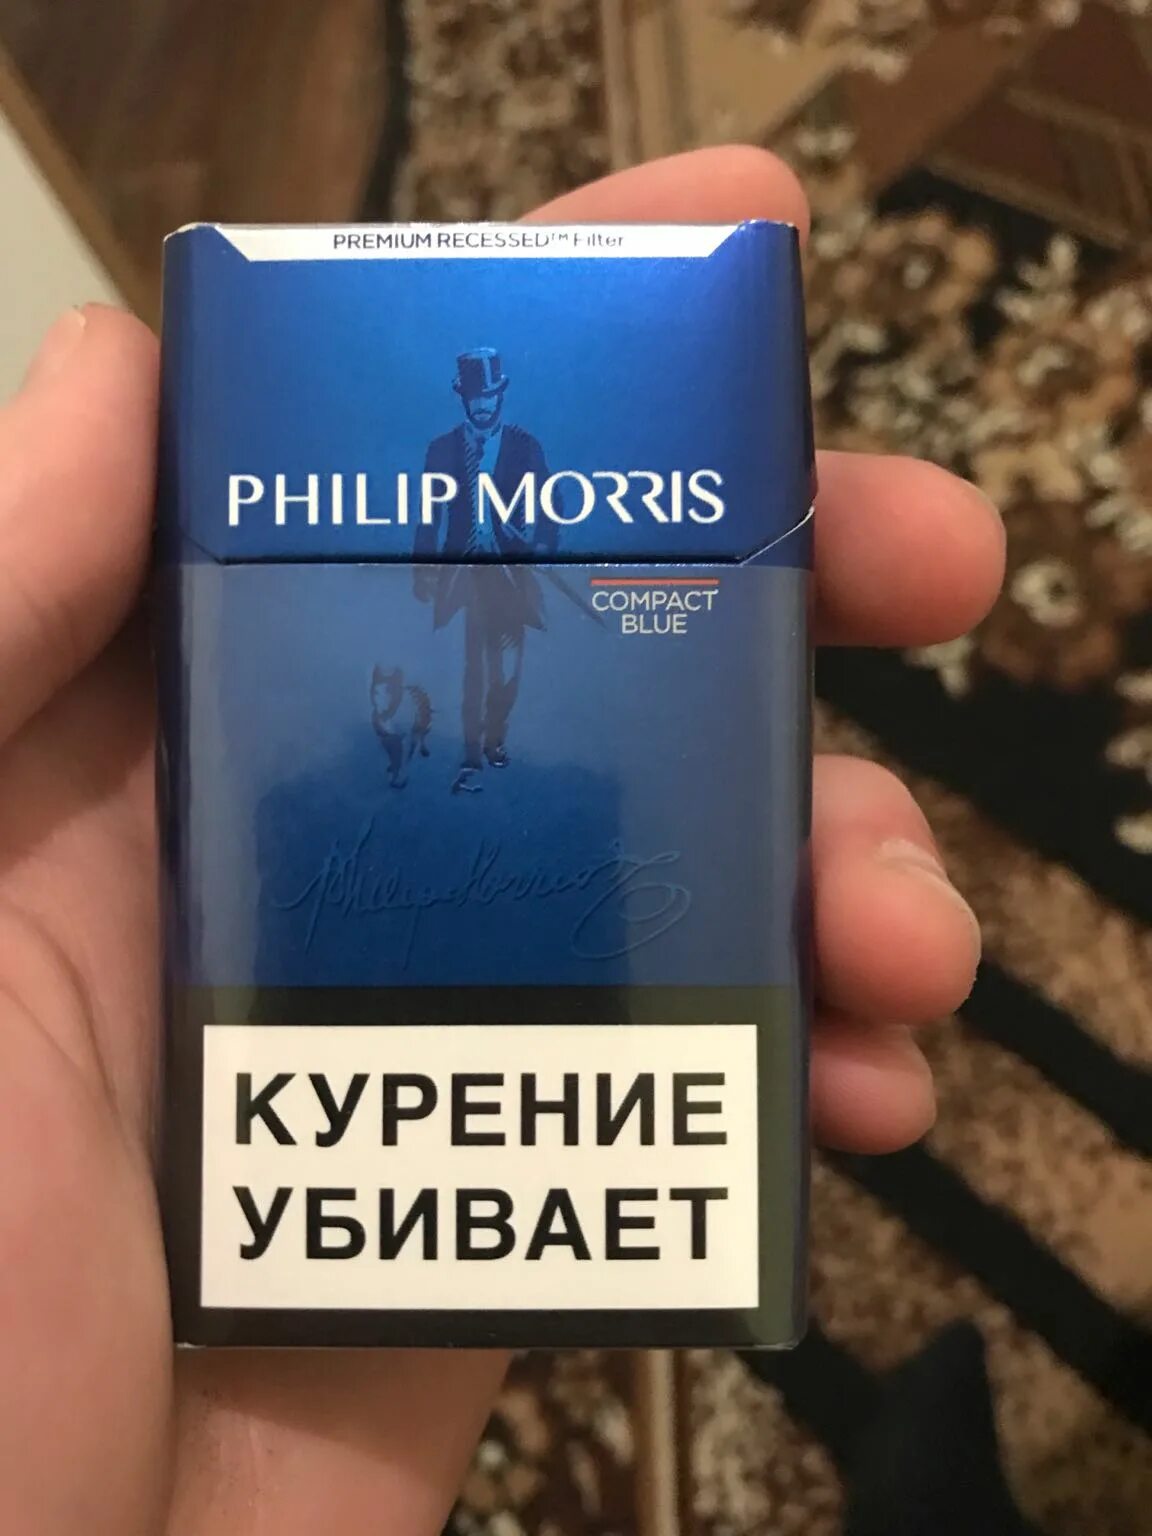 Филипс Морис компакт Блю. Сигареты с фильтром "Philip Morris Compact Blue". Филлип моррис отзывы